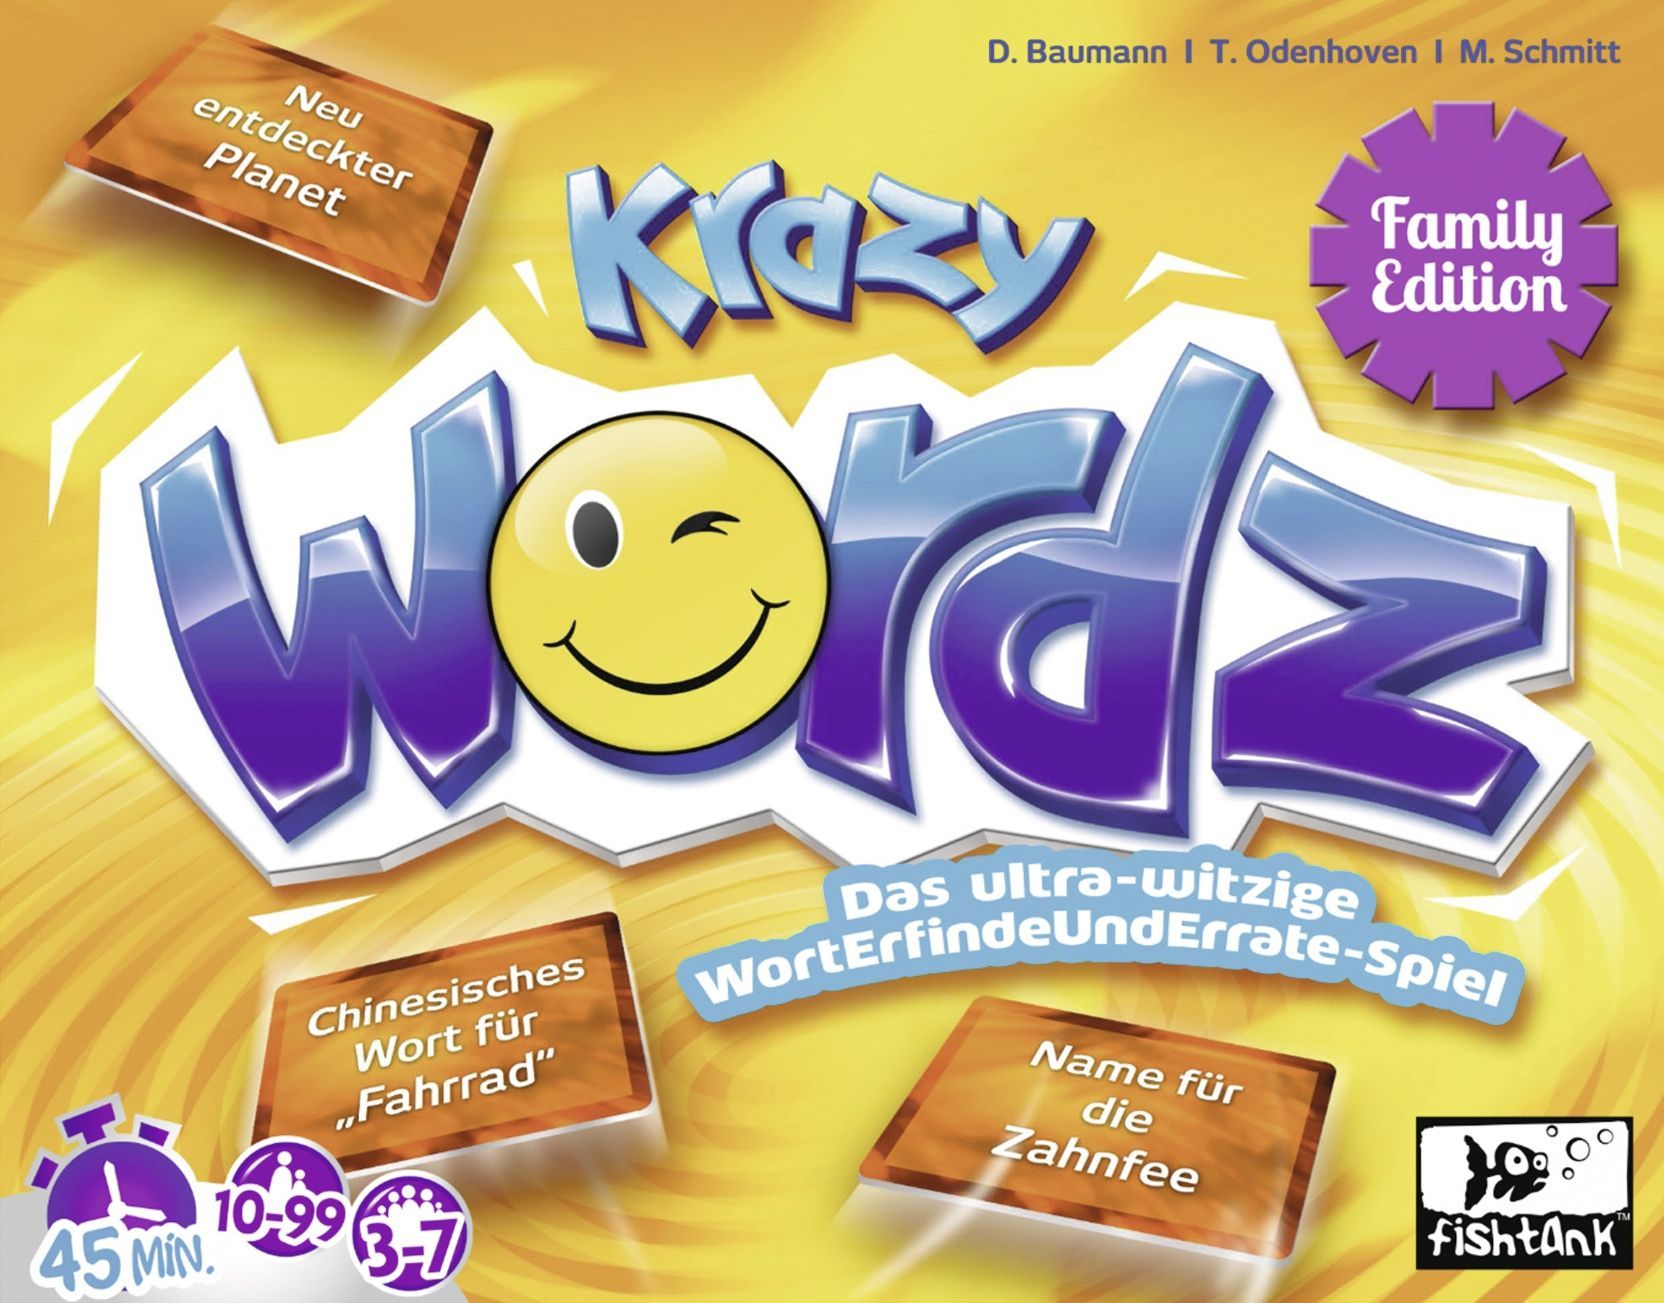 Krazy Wordz: Family Edition